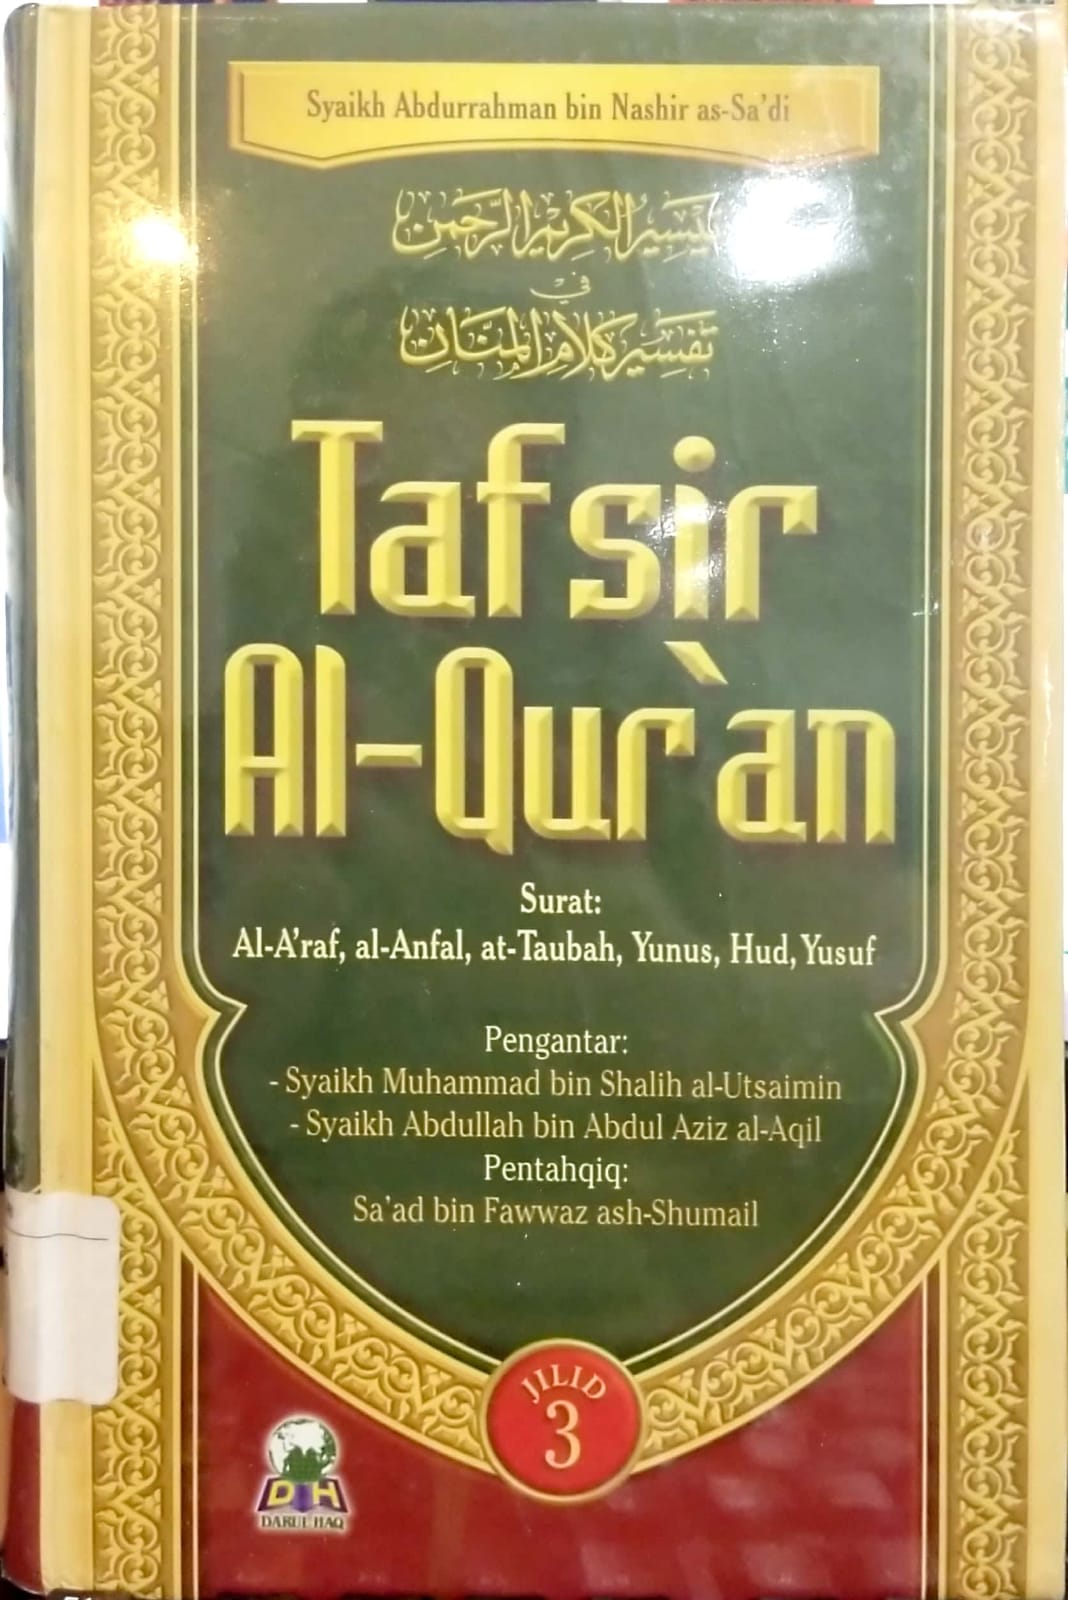 Tafsir Al-Qur'an Jilid 3 :  Al-A'raf, al-Anfal, at-Taubah, Yunus, Hud, Yusuf